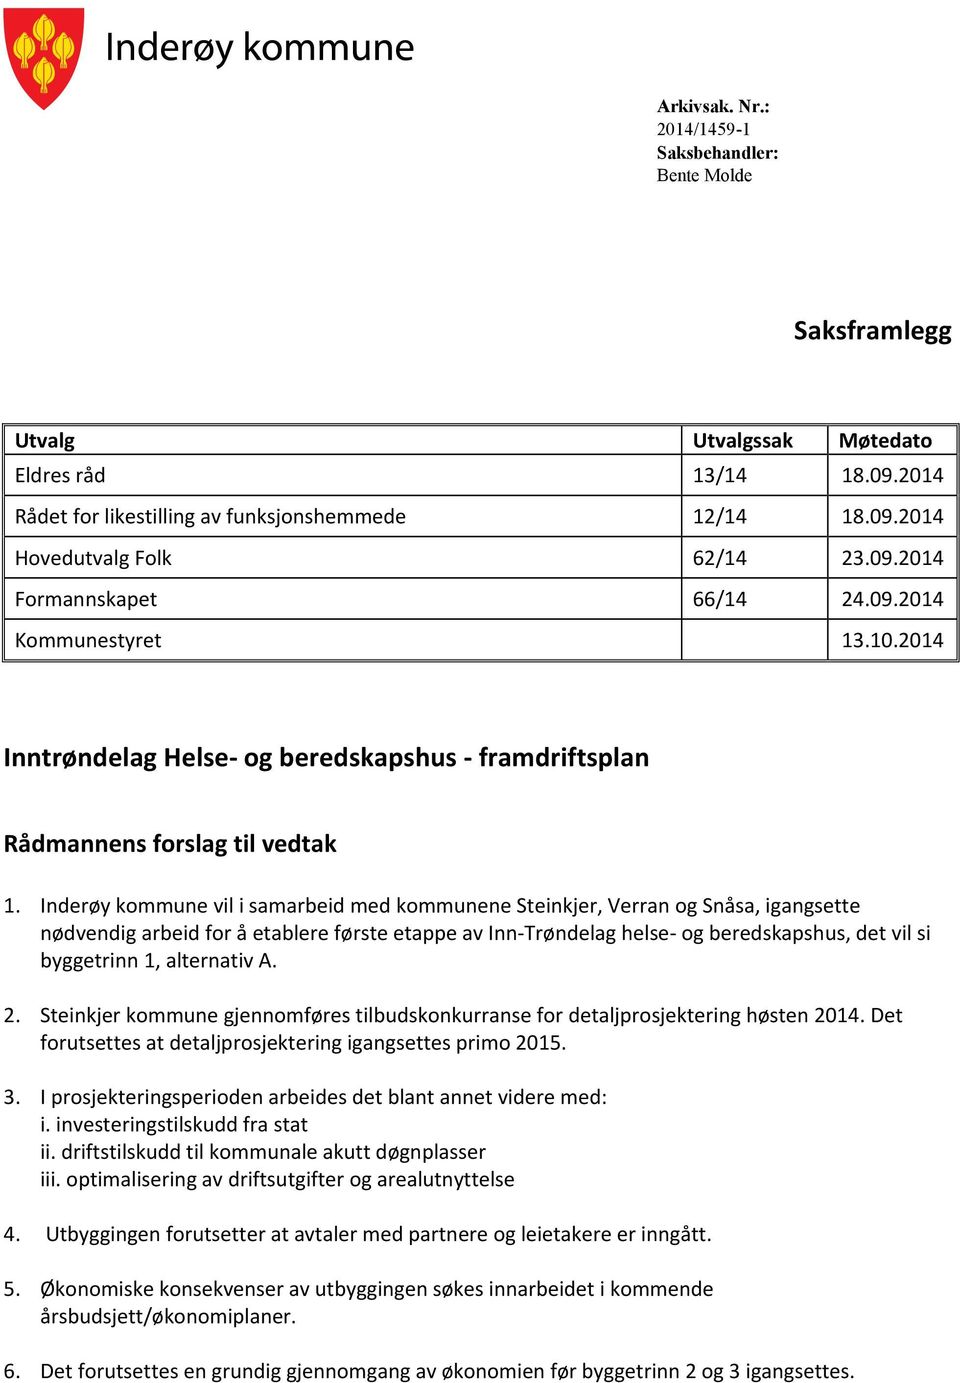 Inderøy kommune vil i samarbeid med kommunene Steinkjer, Verran og Snåsa, igangsette nødvendig arbeid for å etablere første etappe av Inn-Trøndelag helse- og beredskapshus, det vil si byggetrinn 1,